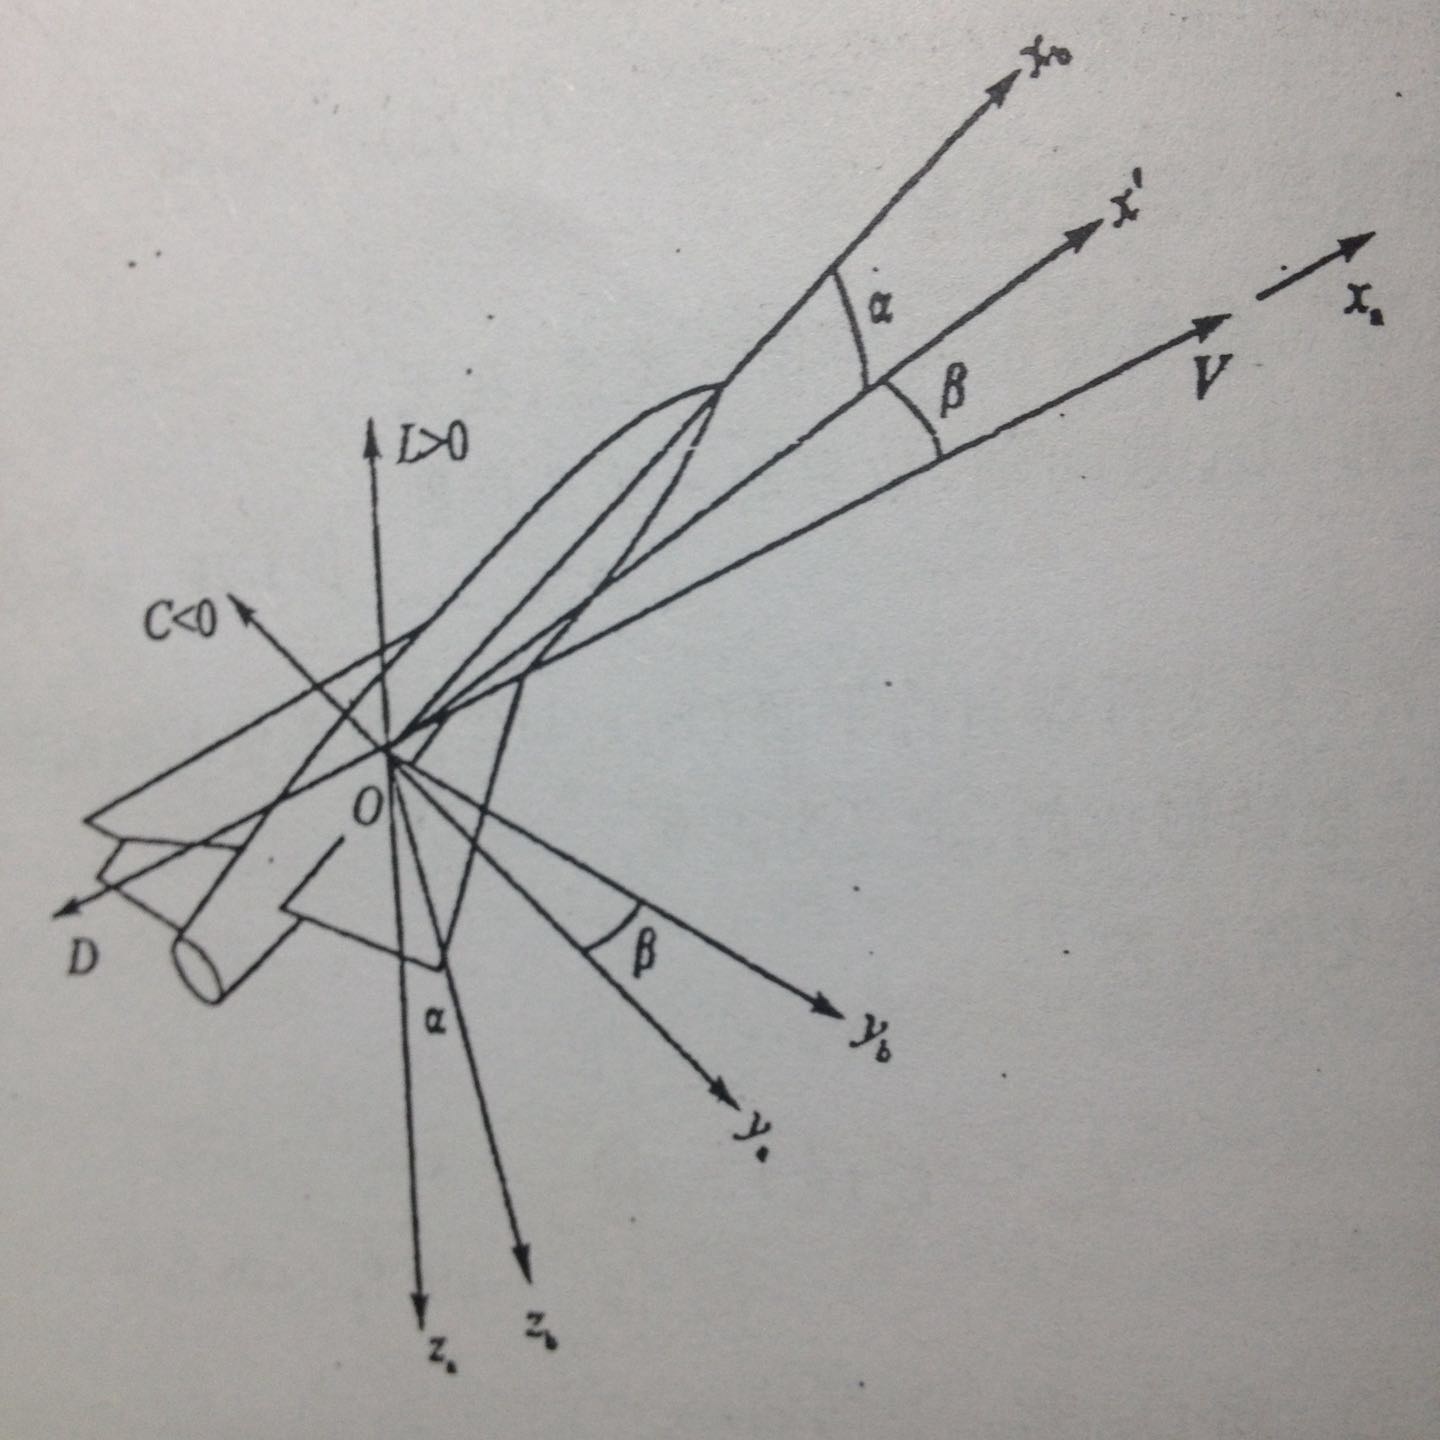 β為側滑角，是速度V與對稱面xb-x’之間的夾角（α為迎角）